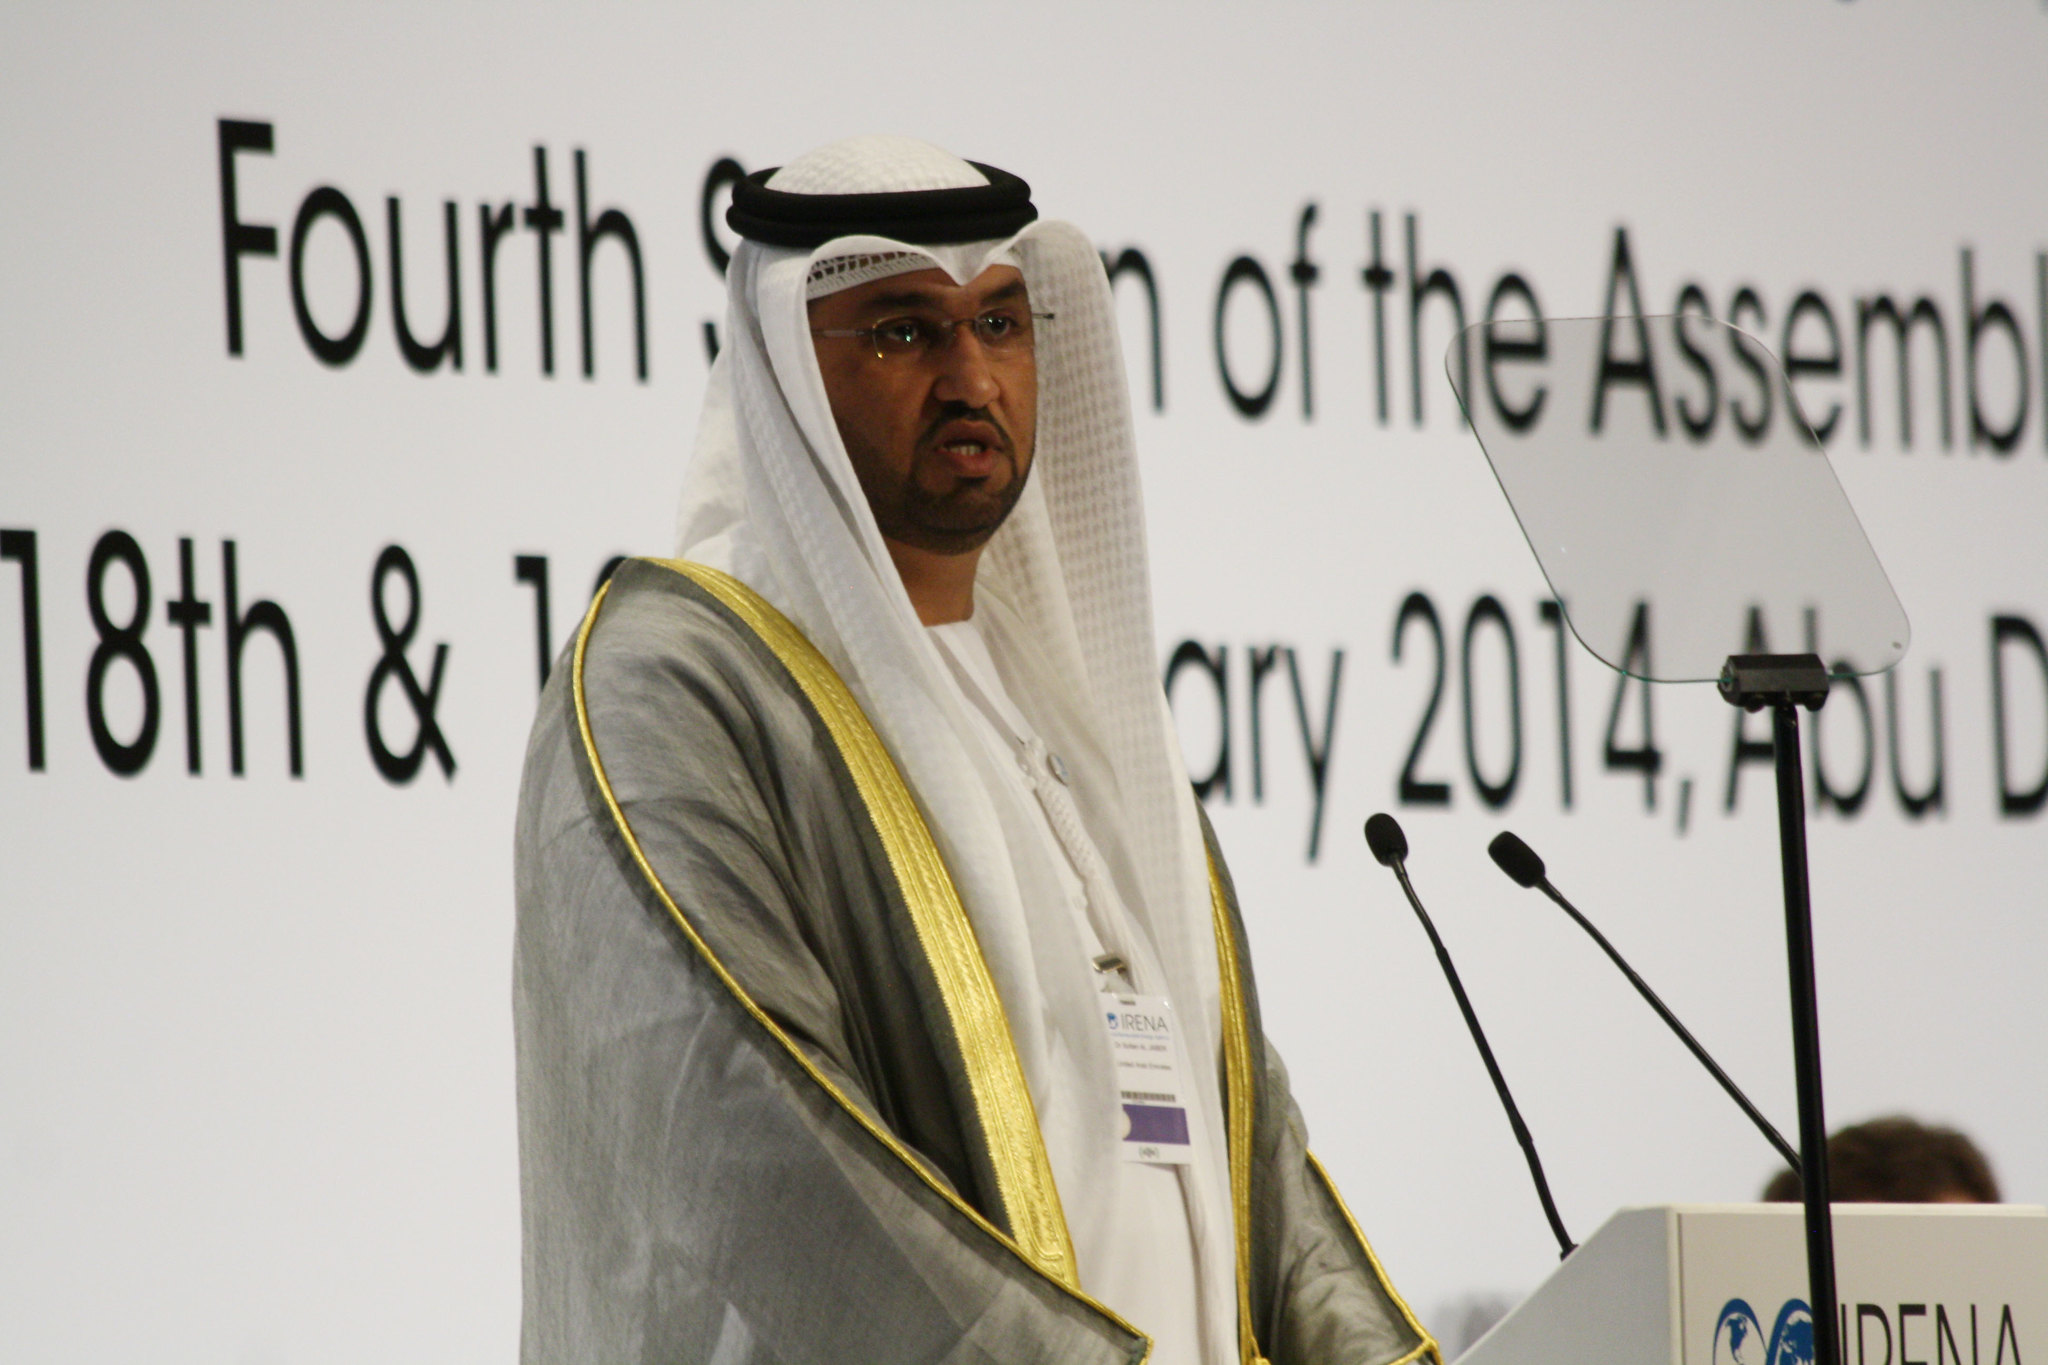 Agenda da COP28 propõe dobrar a produção de hidrogênio até 2030. Na imagem: Sultão Ahmed al-Jaber, CEO da petroleira estatal dos Emirados Árabes, Adnoc, será o presidente da conferência climática da ONU em 2023 – COP28 (Foto: Divulgação)